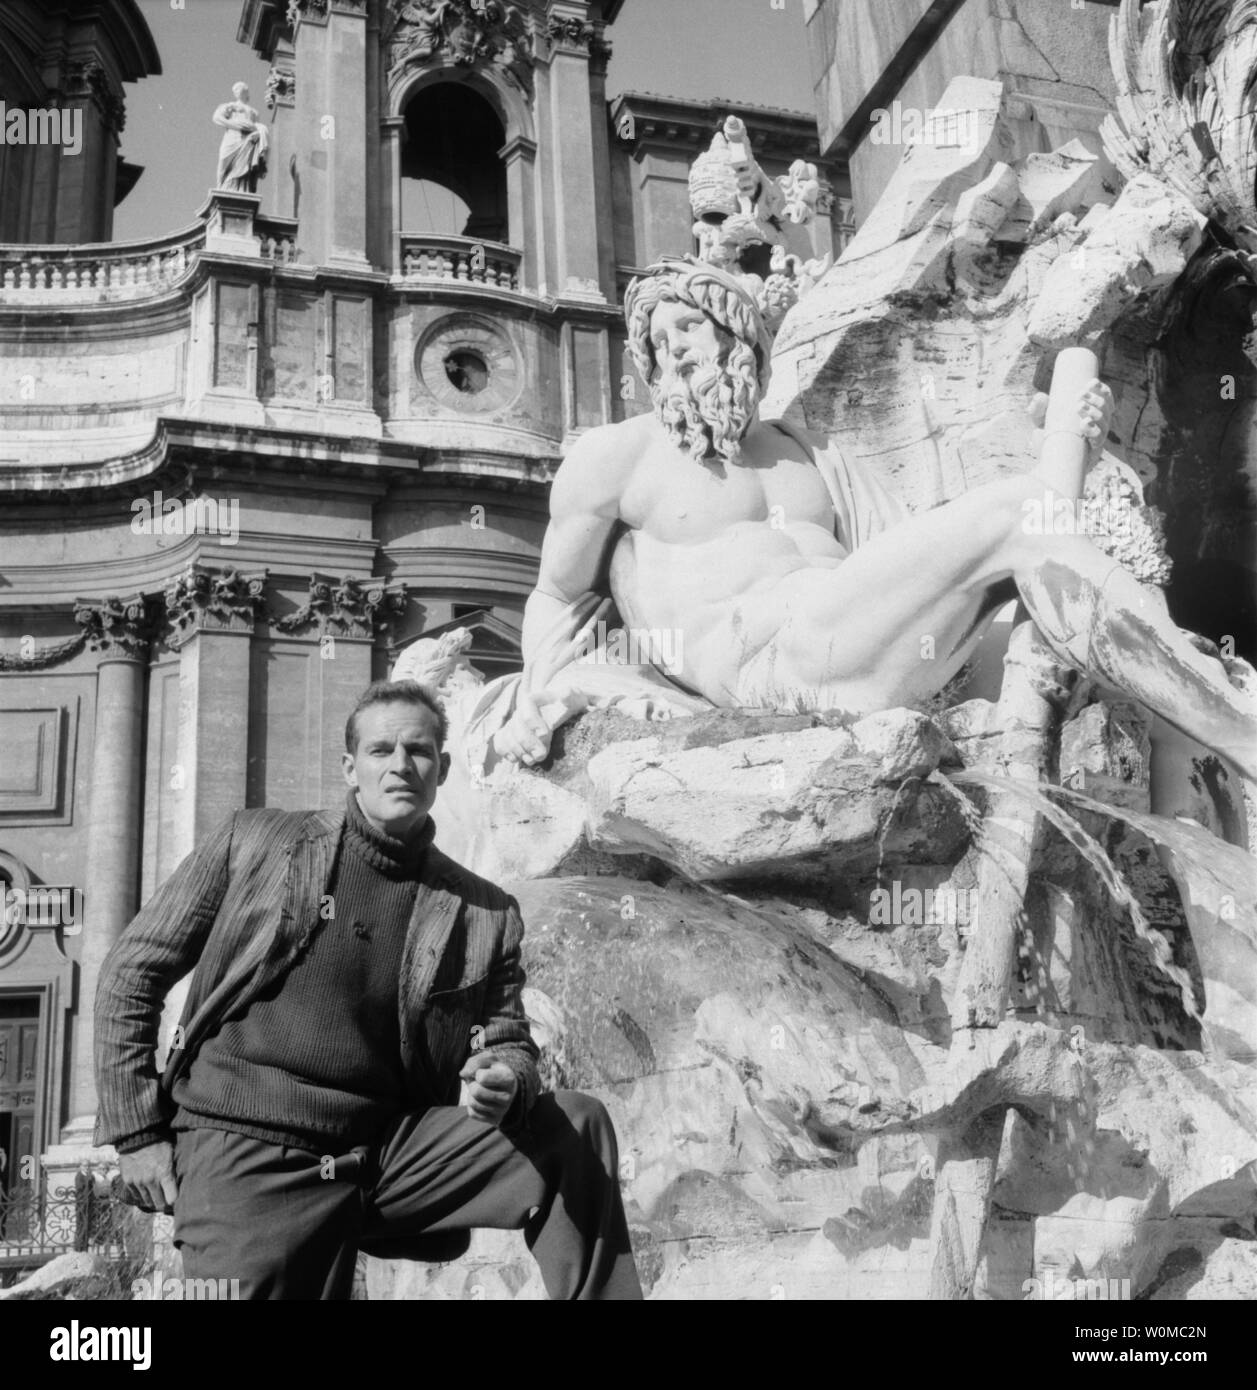 Charlton Heston starb im Alter von 84 Jahren in seinem Haus in Beverly Hills am 5. April 2008. Er ist in diesem Jahr 1961 Datei Foto eine Pause während der Vorbereitungen während der Dreharbeiten zu "Die Taube, nahm Rom", die 1962 uraufgeführt wurde. (UPI Foto/Dateien) Stockfoto